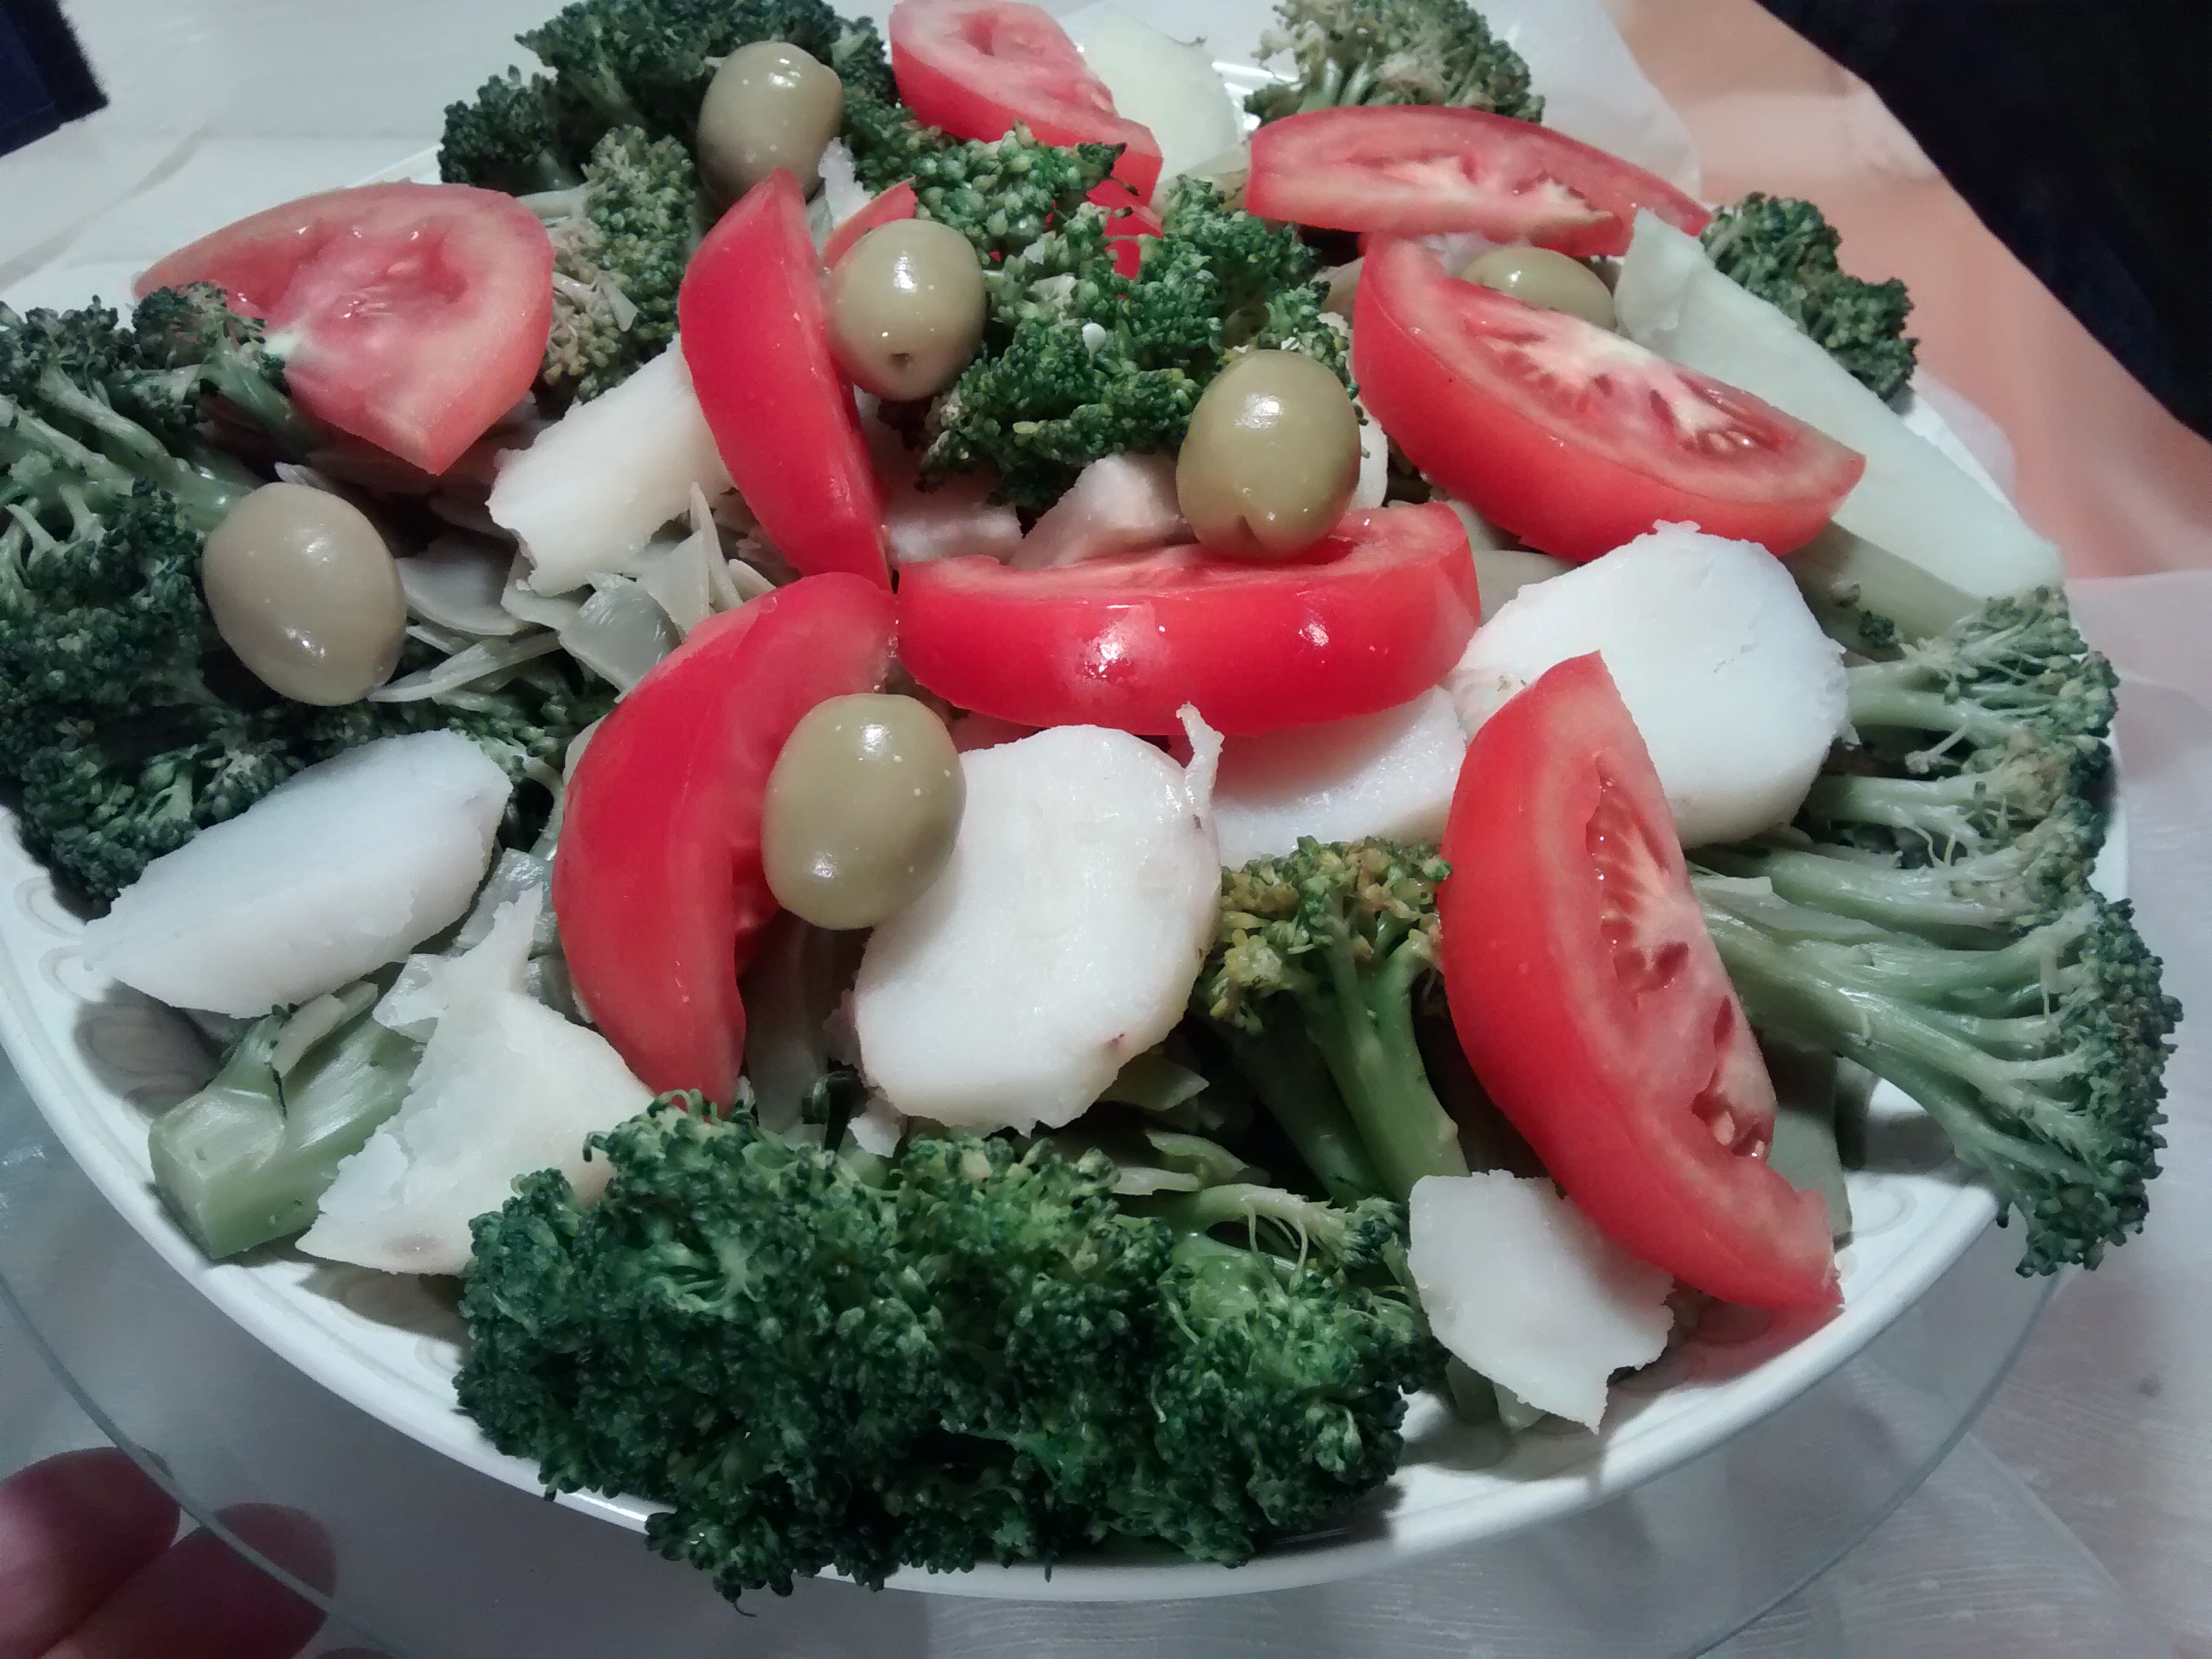 mira como se prepara esta ensalada de brócoli, chauchas, papa y disfrútala